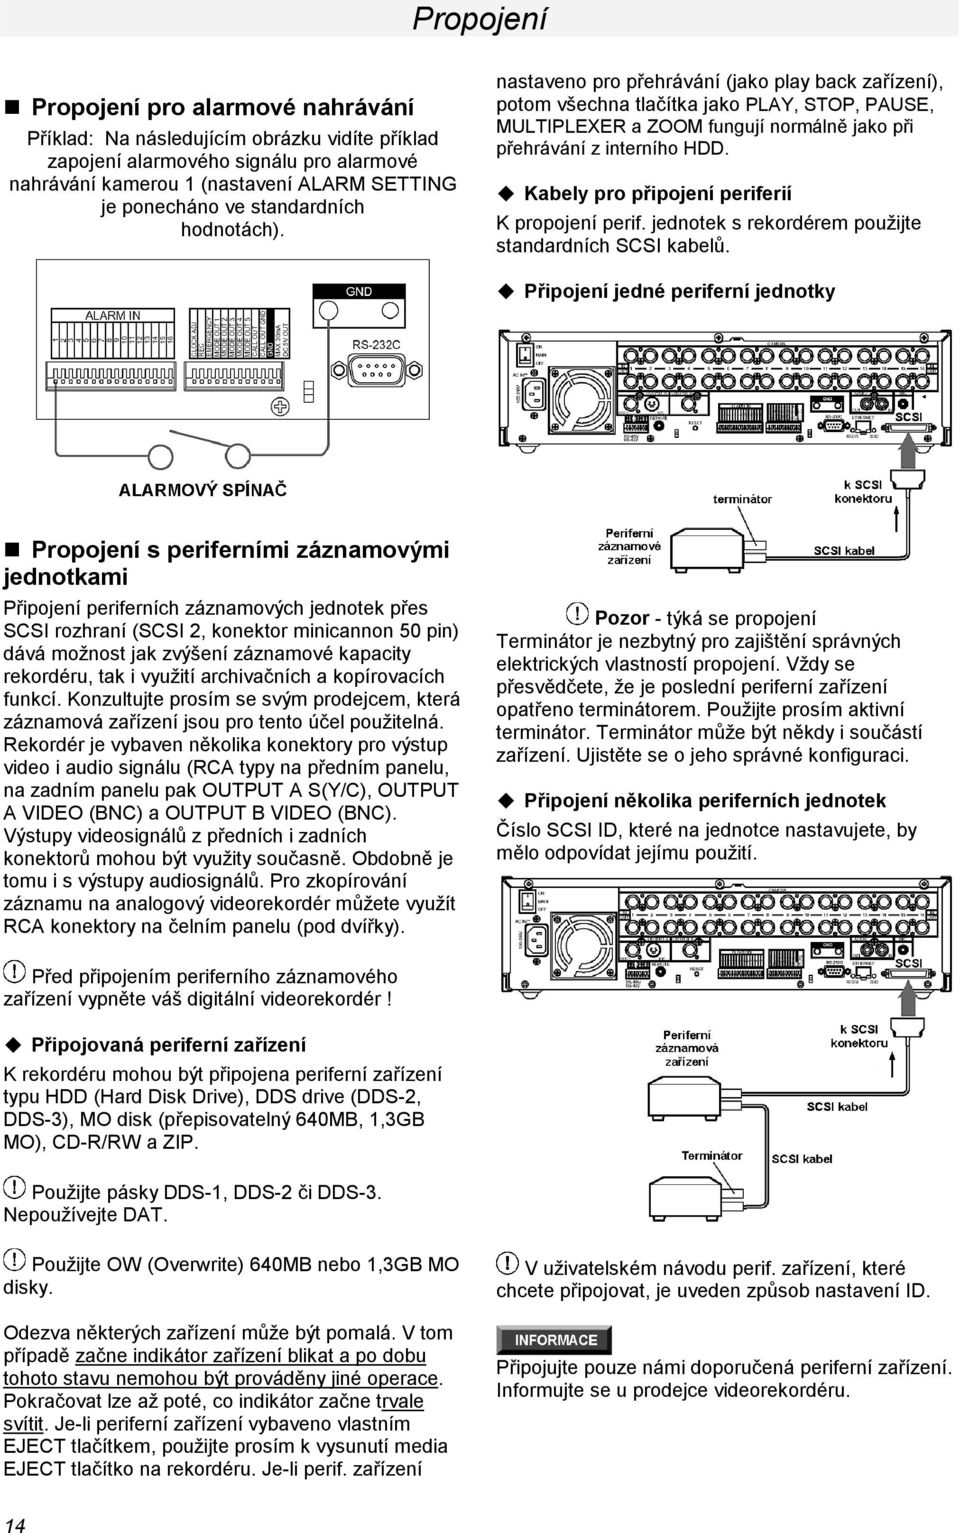 Kabely pro připojení periferií K propojení perif. jednotek s rekordérem použijte standardních SCSI kabelů.